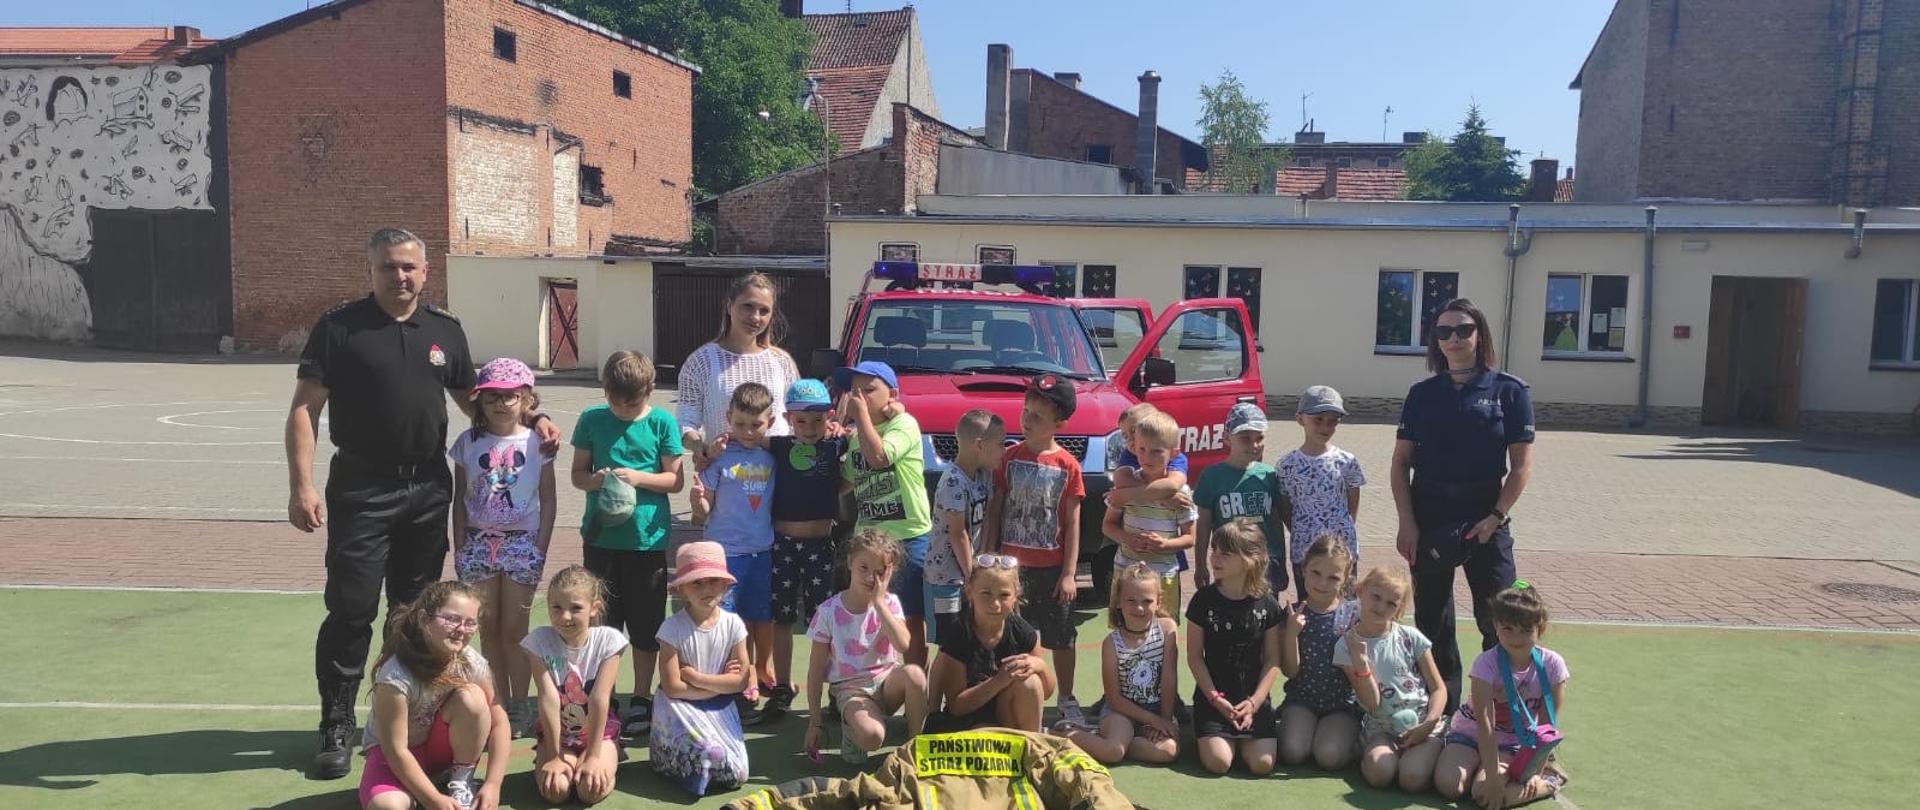 2 z 1 267
"Bezpieczne Wakacje" - funkcjonariusze w ramach kampanii społecznej w chełmińskich przedszkolach